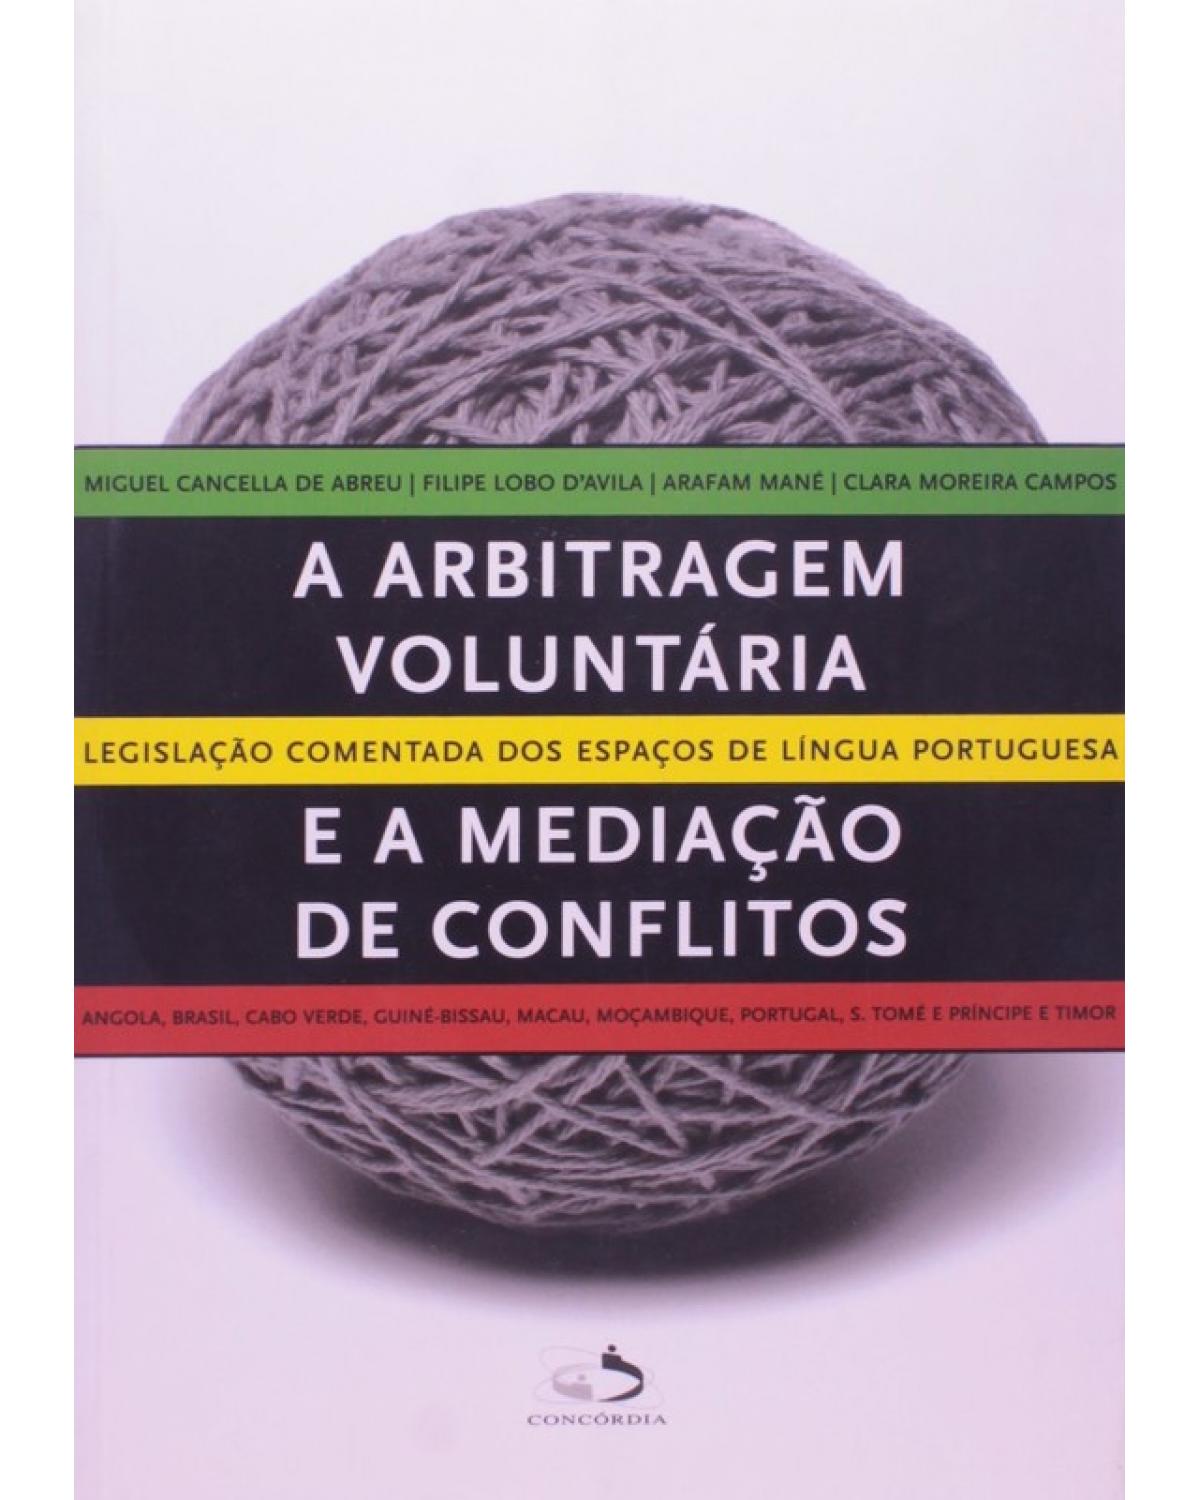 A arbitragem voluntária e a mediação de conflitos - legislação comentada dos espaços de língua portuguesa - 1ª Edição | 2008